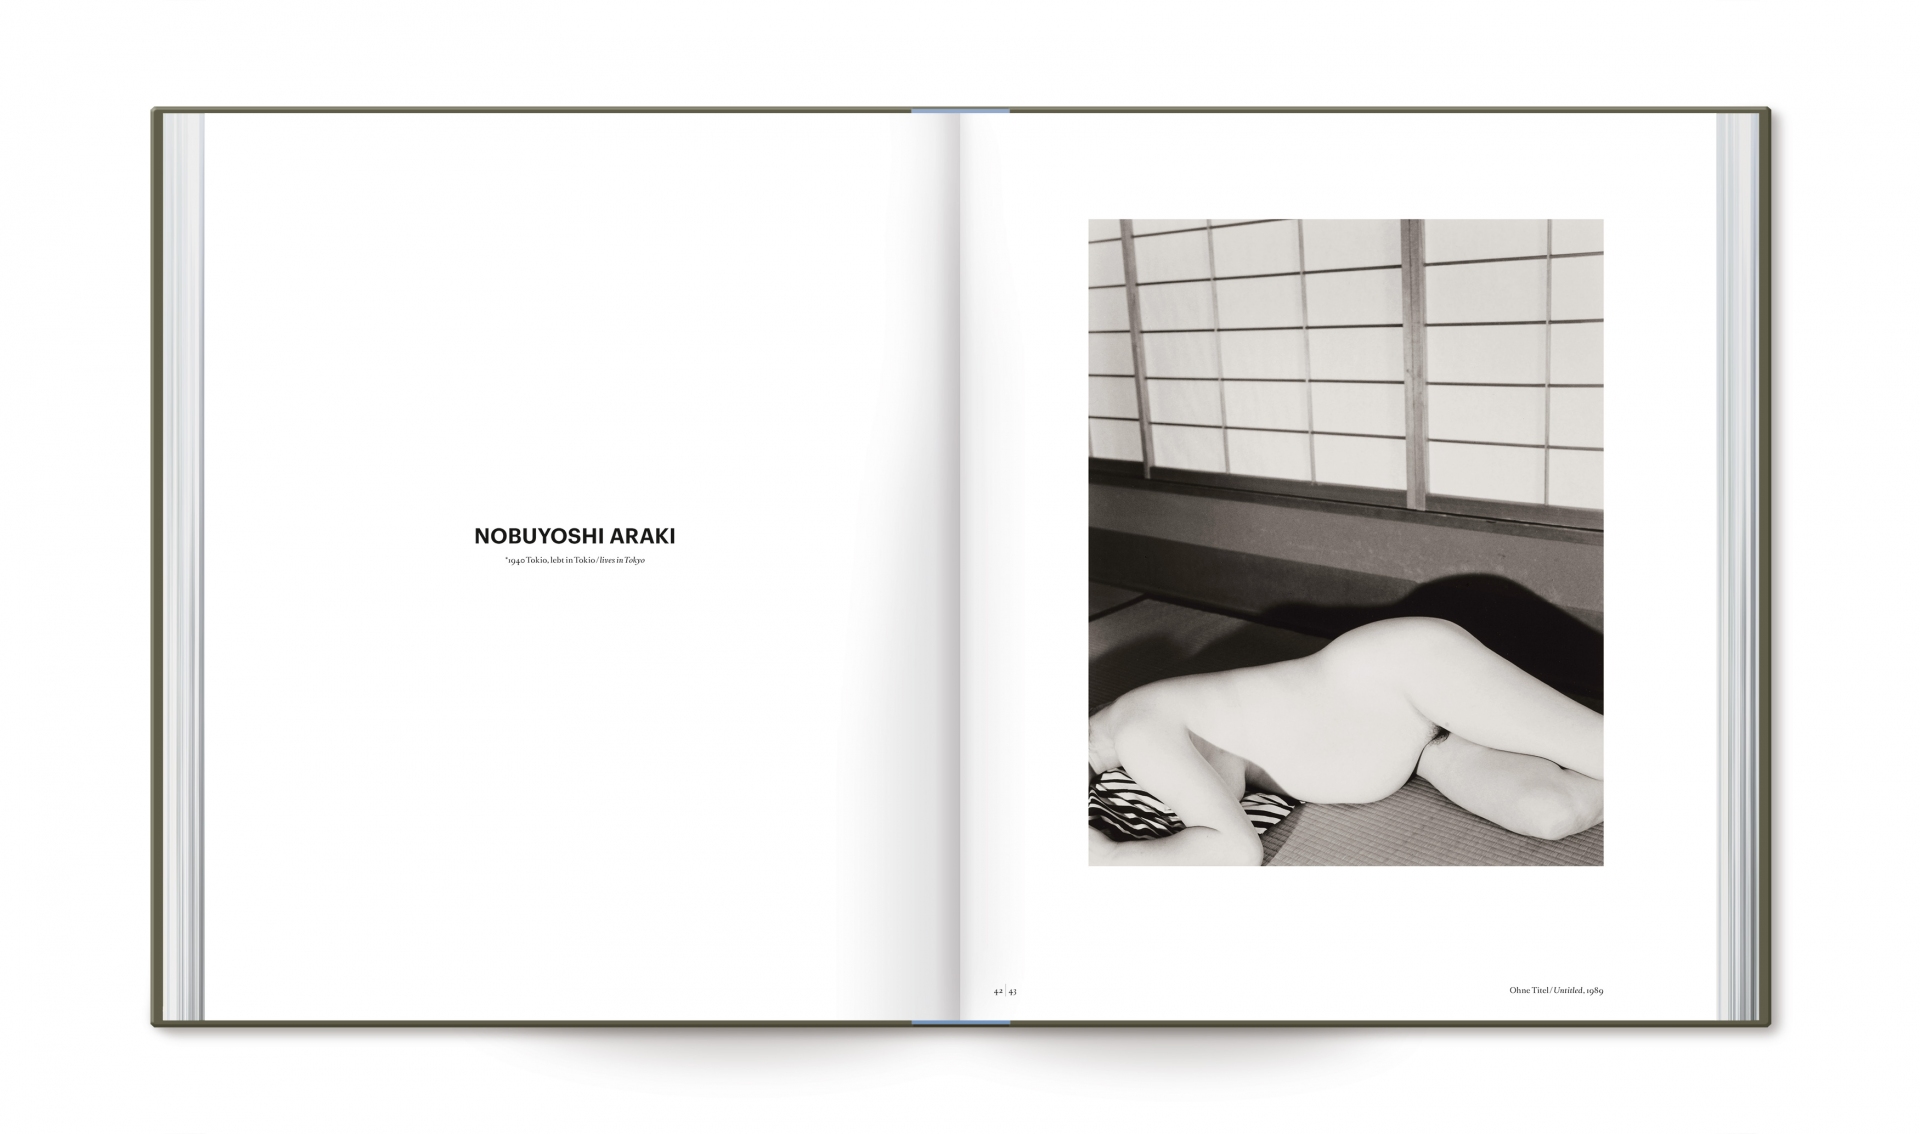 Buchgestaltung Ausstellungskatalog - The Lucid Evidence - Katalog der fotografischen Sammlung - Museum für Moderne Kunst - Doppelseite